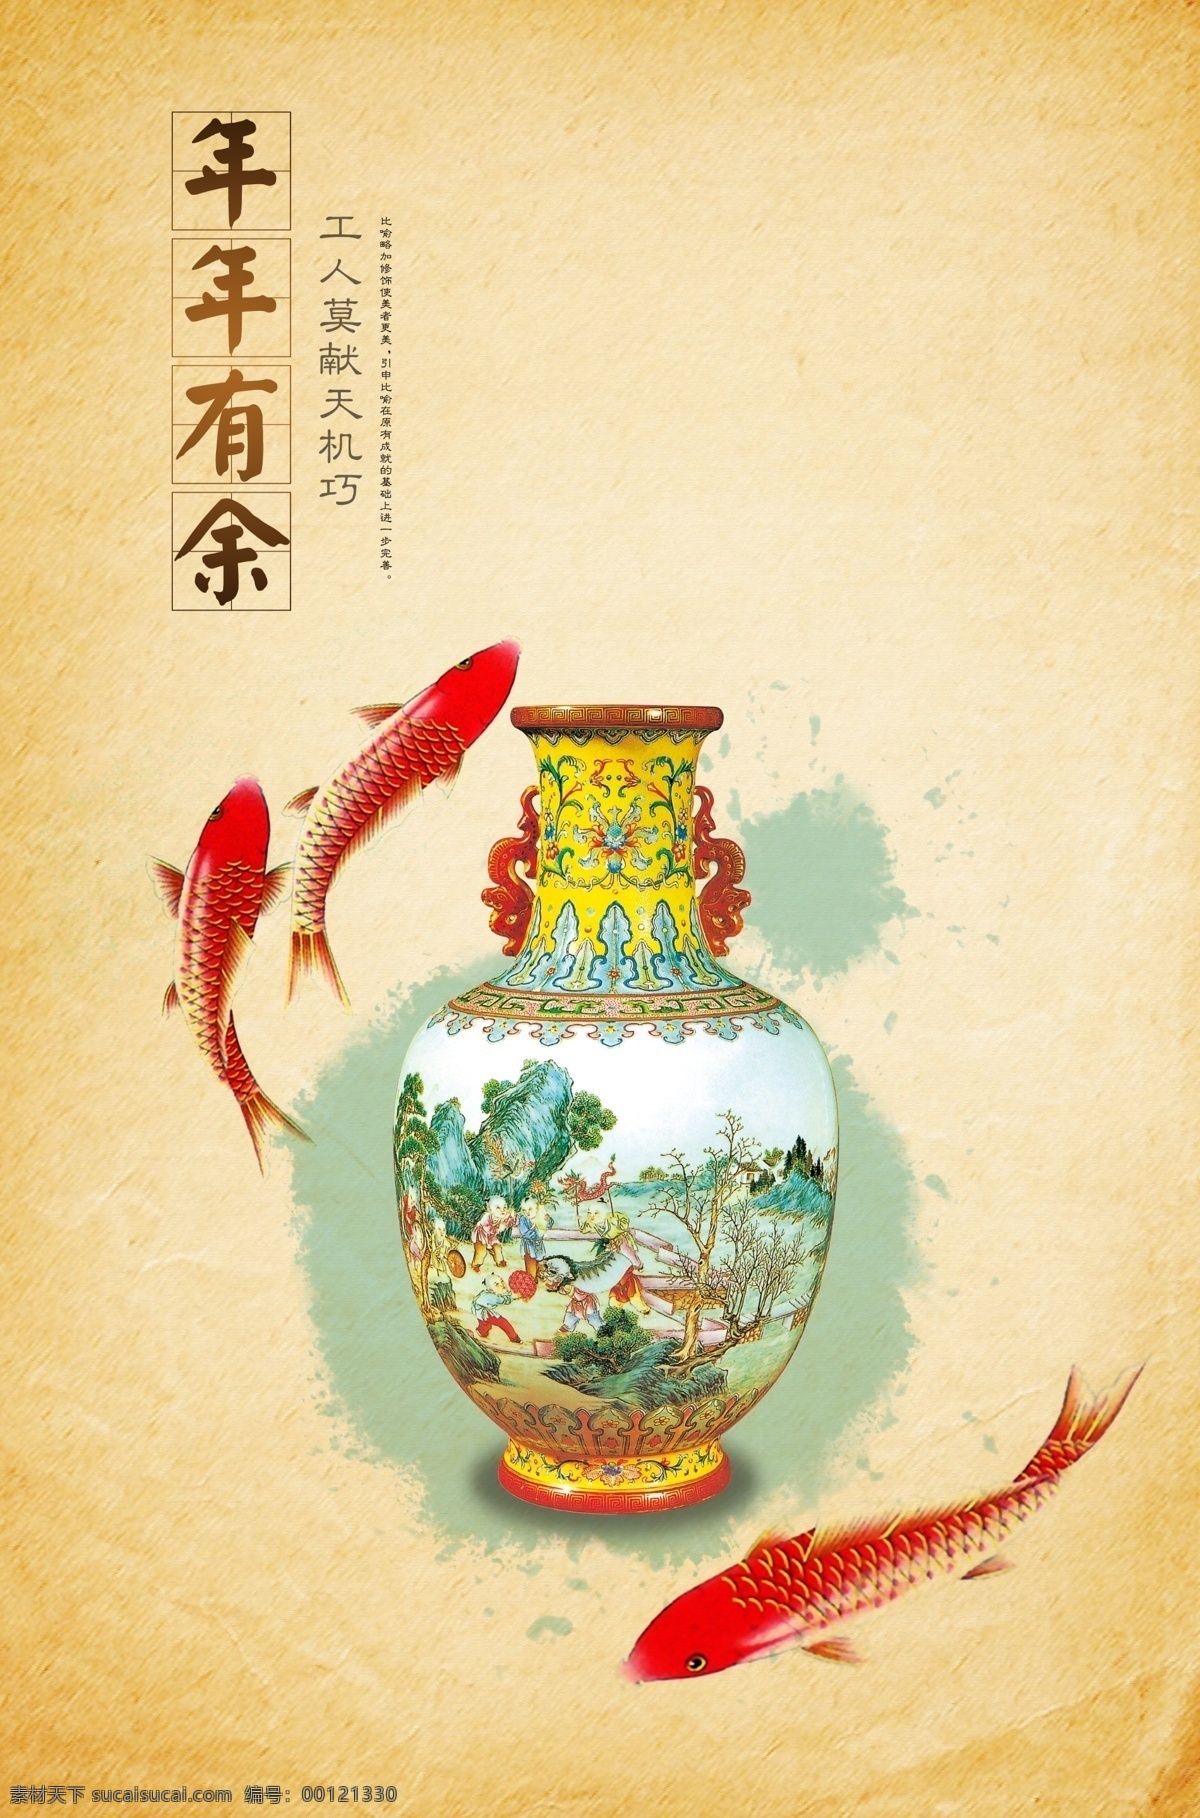 年年有余 年年有鱼 水墨鱼 陶瓷 古董 瓷器 瓷 中国古典文化 古典艺术精髓 古典艺术 墨点 牛皮纸 psd图